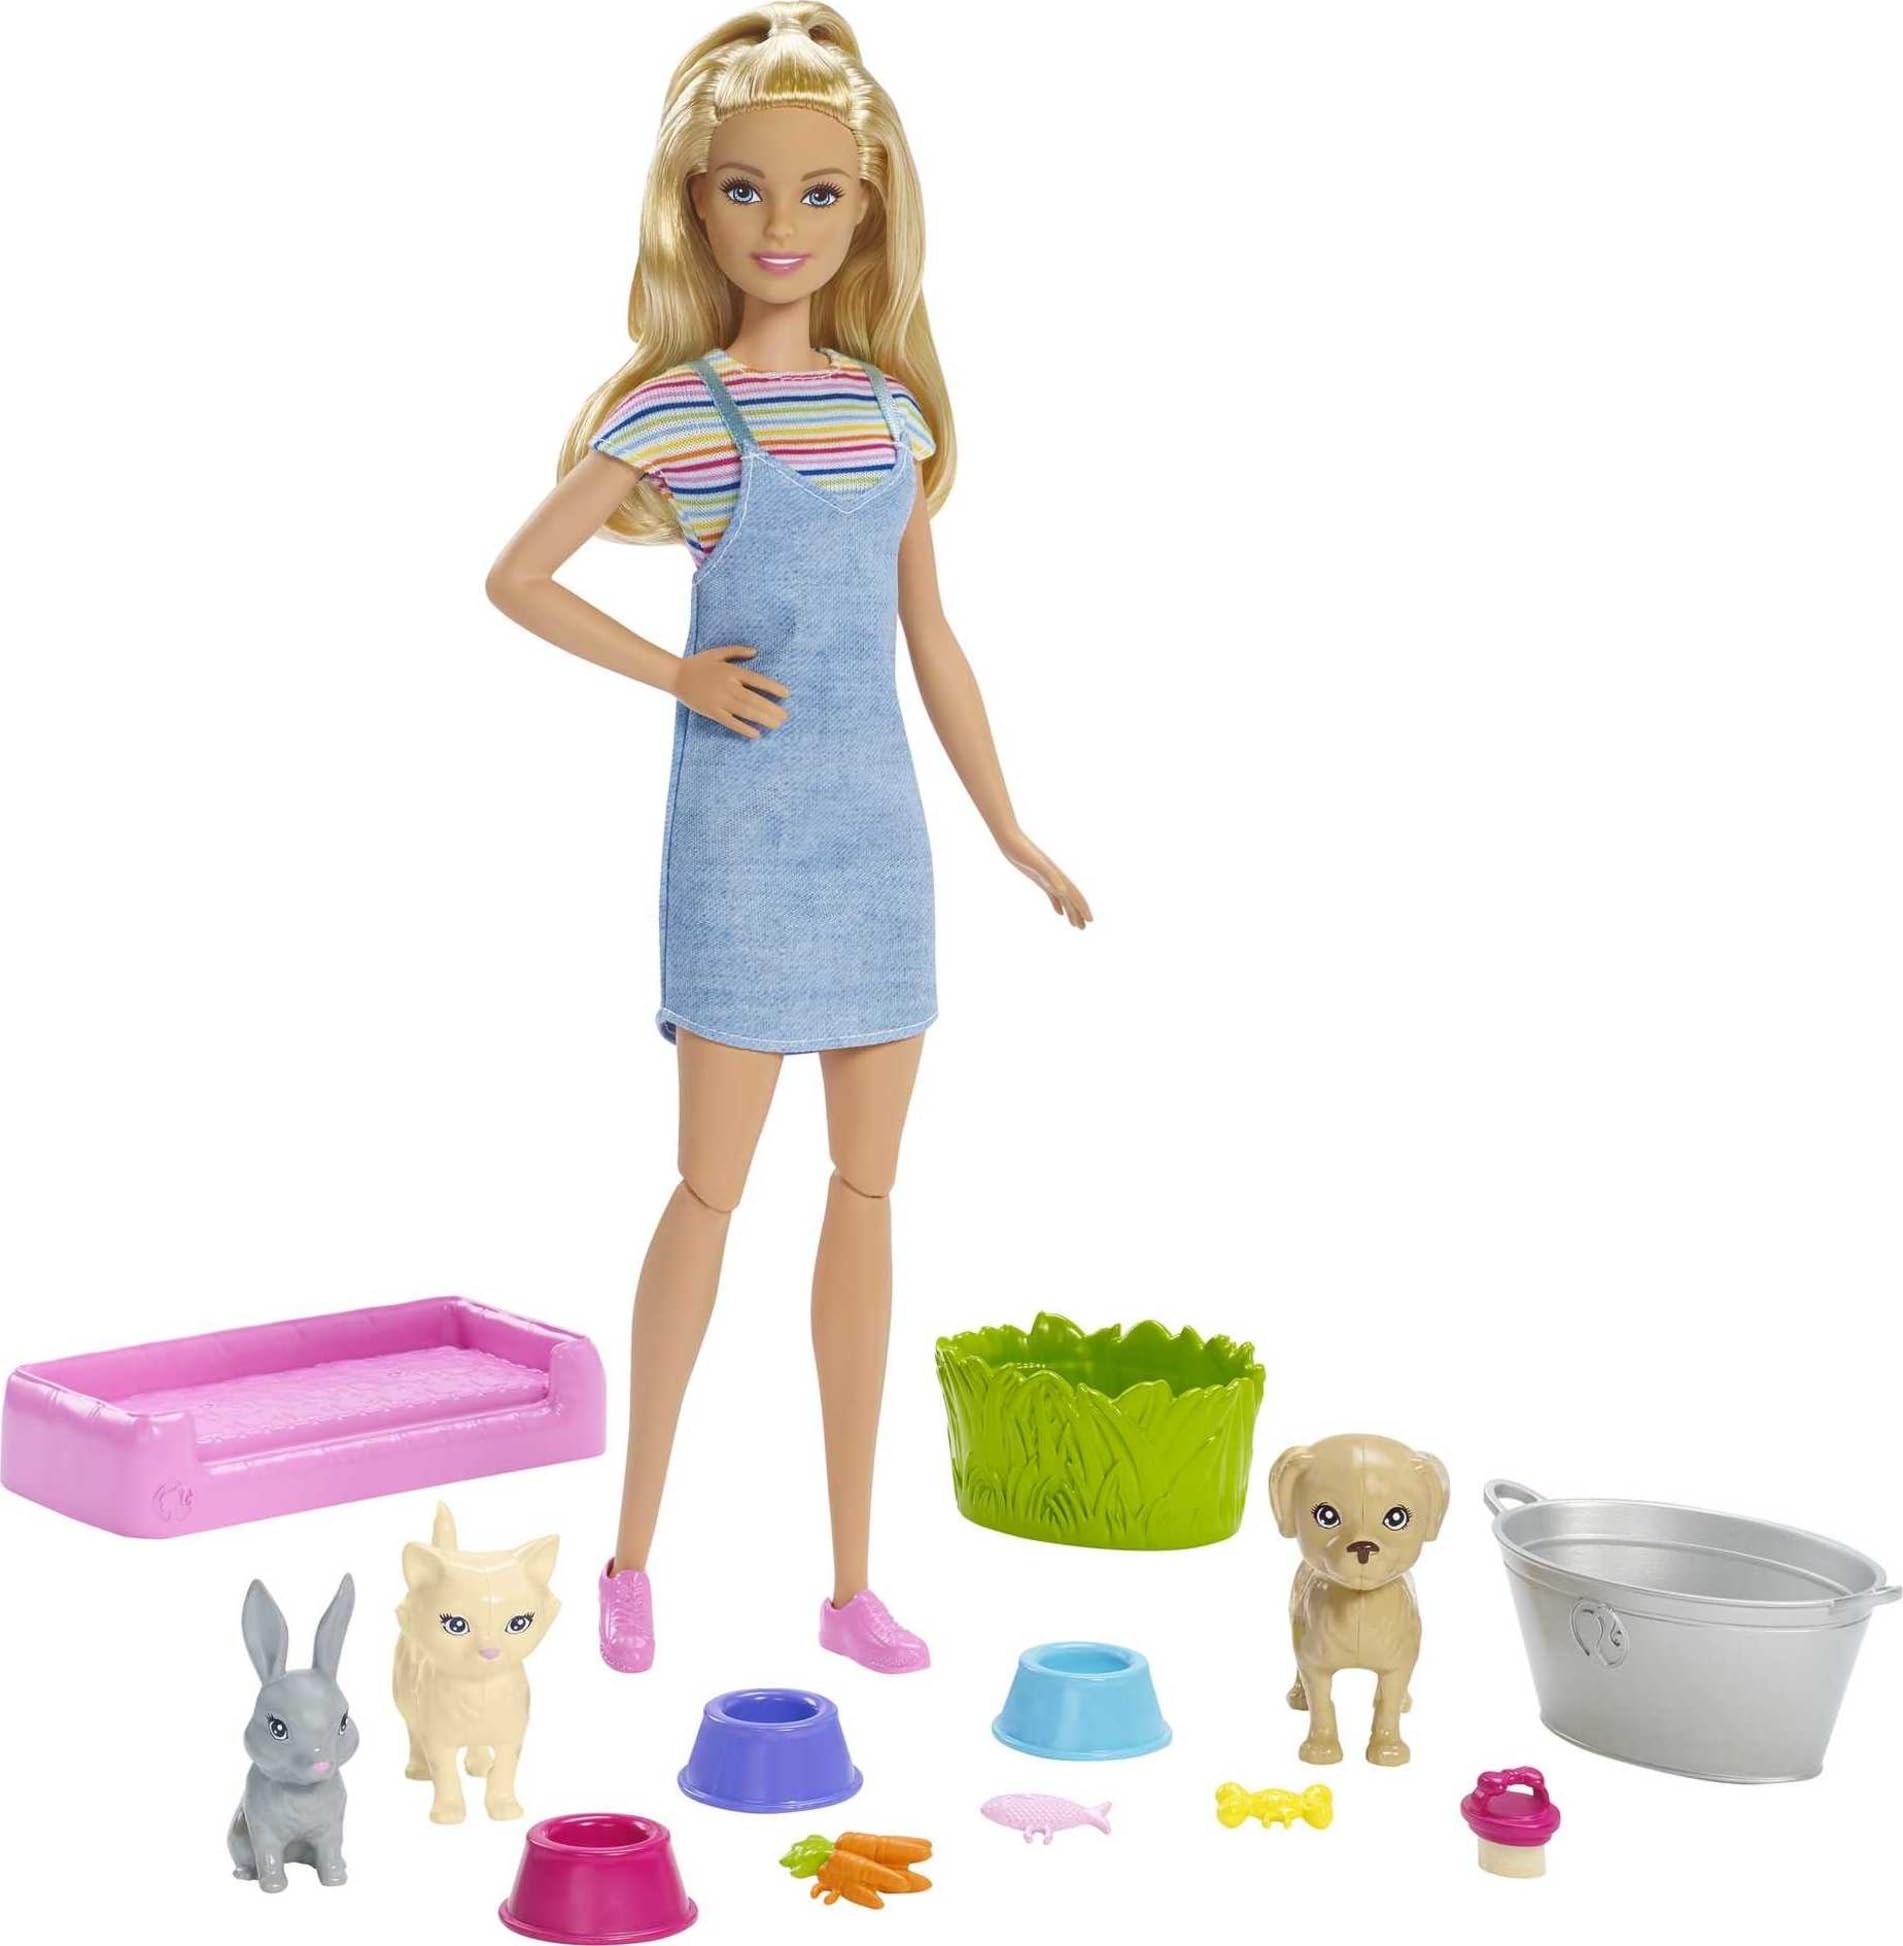 $7.99 (Prime Members): Barbie Play 'N Wash Pets Doll & Playset